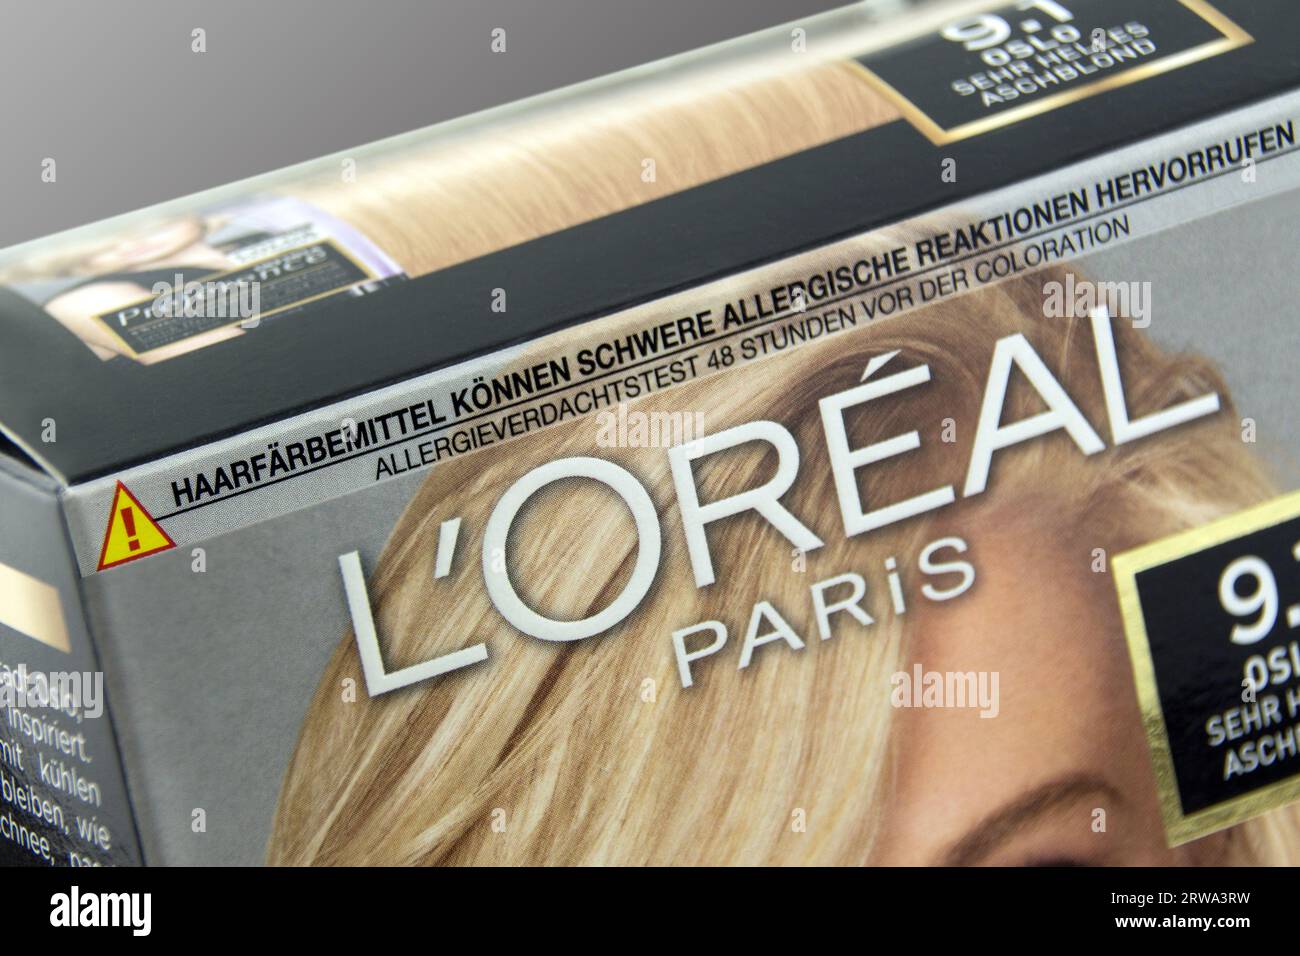 1 Packung l'oréal Paris Haarfarbe bionda Foto Stock